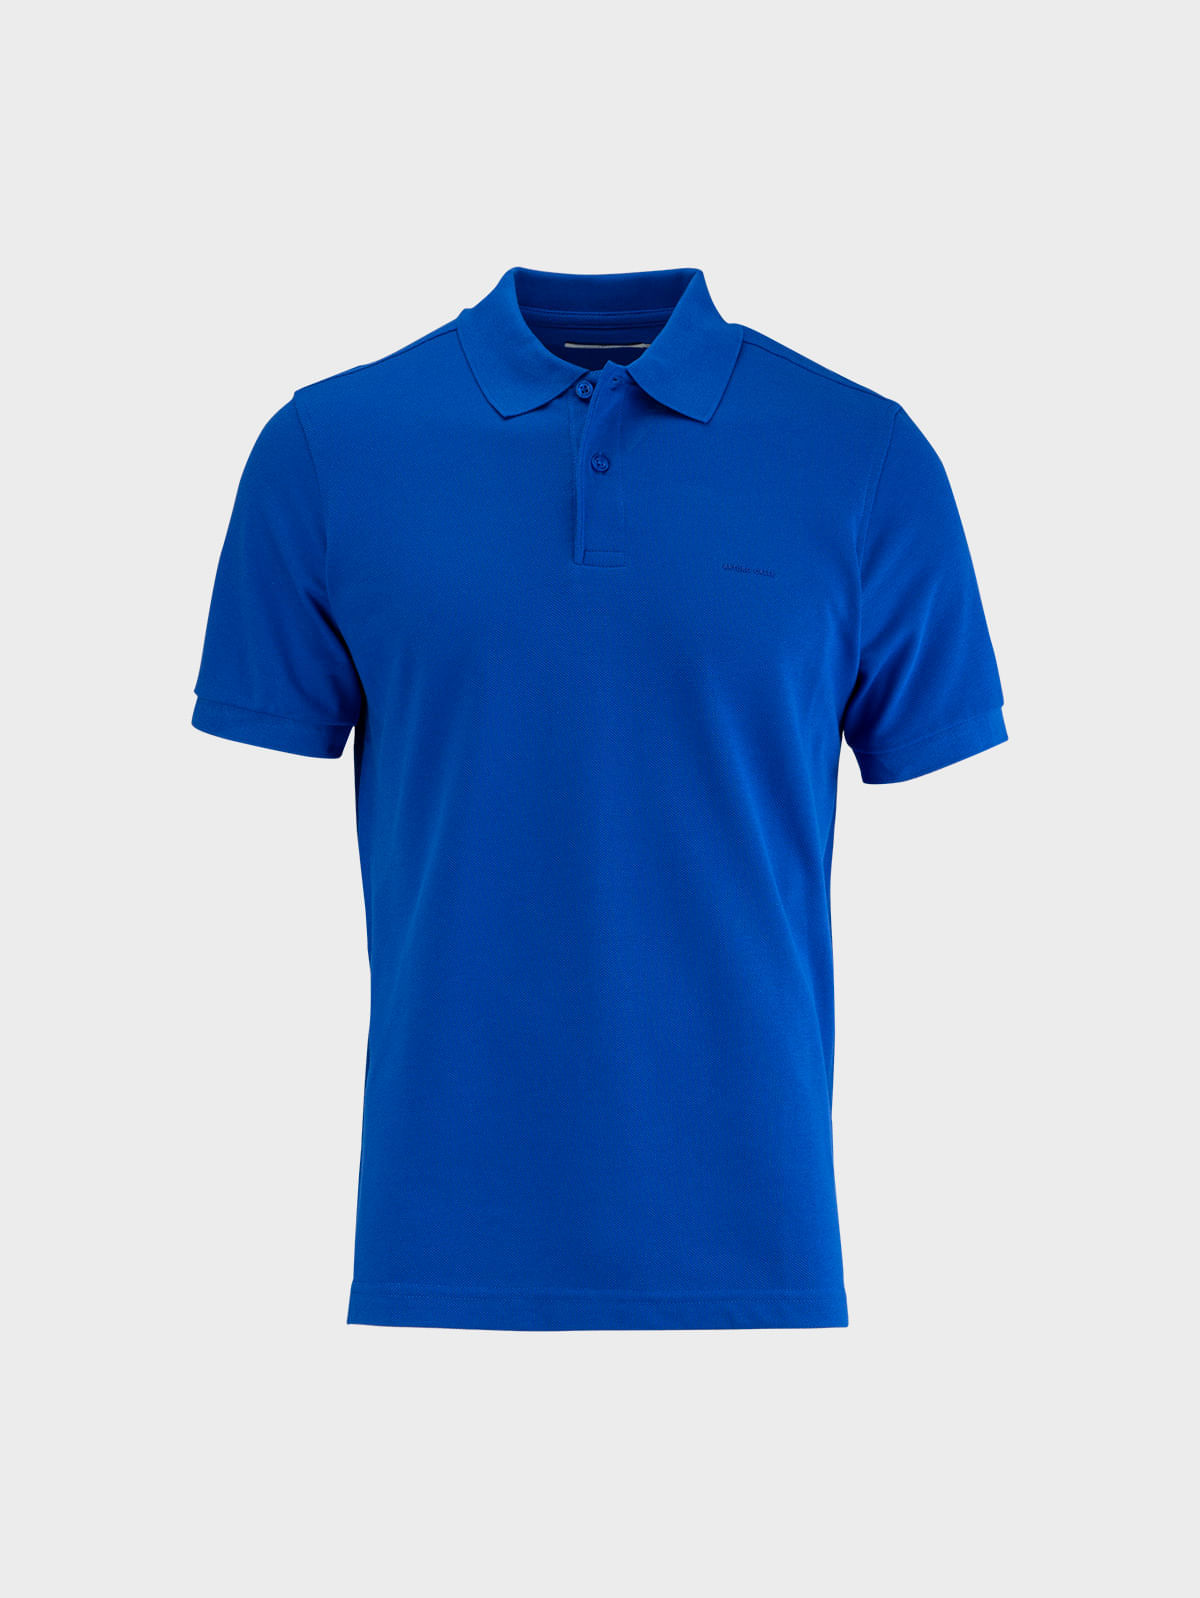 Camiseta Polo Hombre 201-Azul Celeste - Arfrazv Camisas Polo